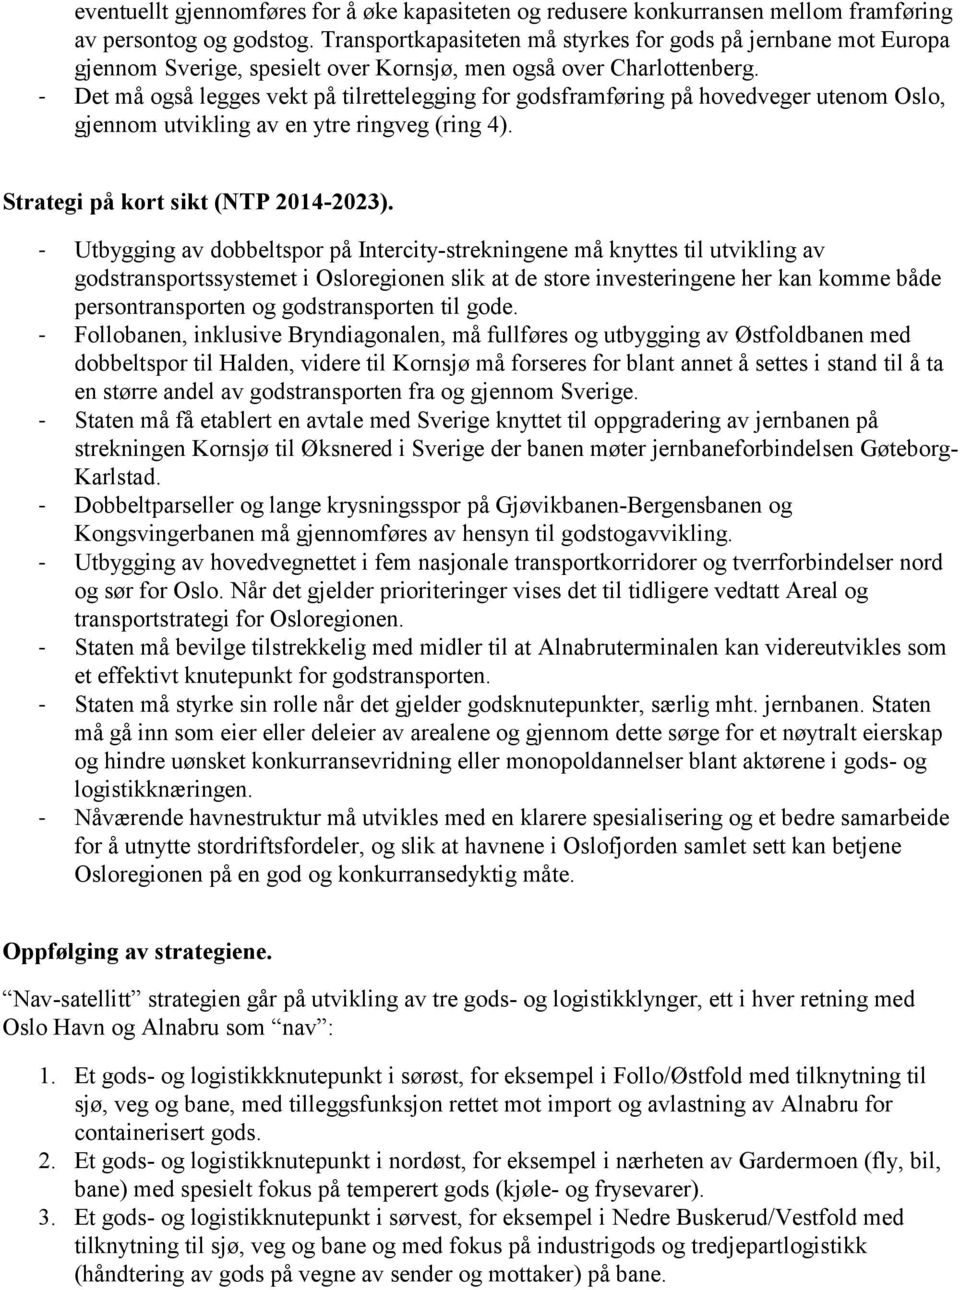 - Det må også legges vekt på tilrettelegging for godsframføring på hovedveger utenom Oslo, gjennom utvikling av en ytre ringveg (ring 4). Strategi på kort sikt (NTP 2014-2023).